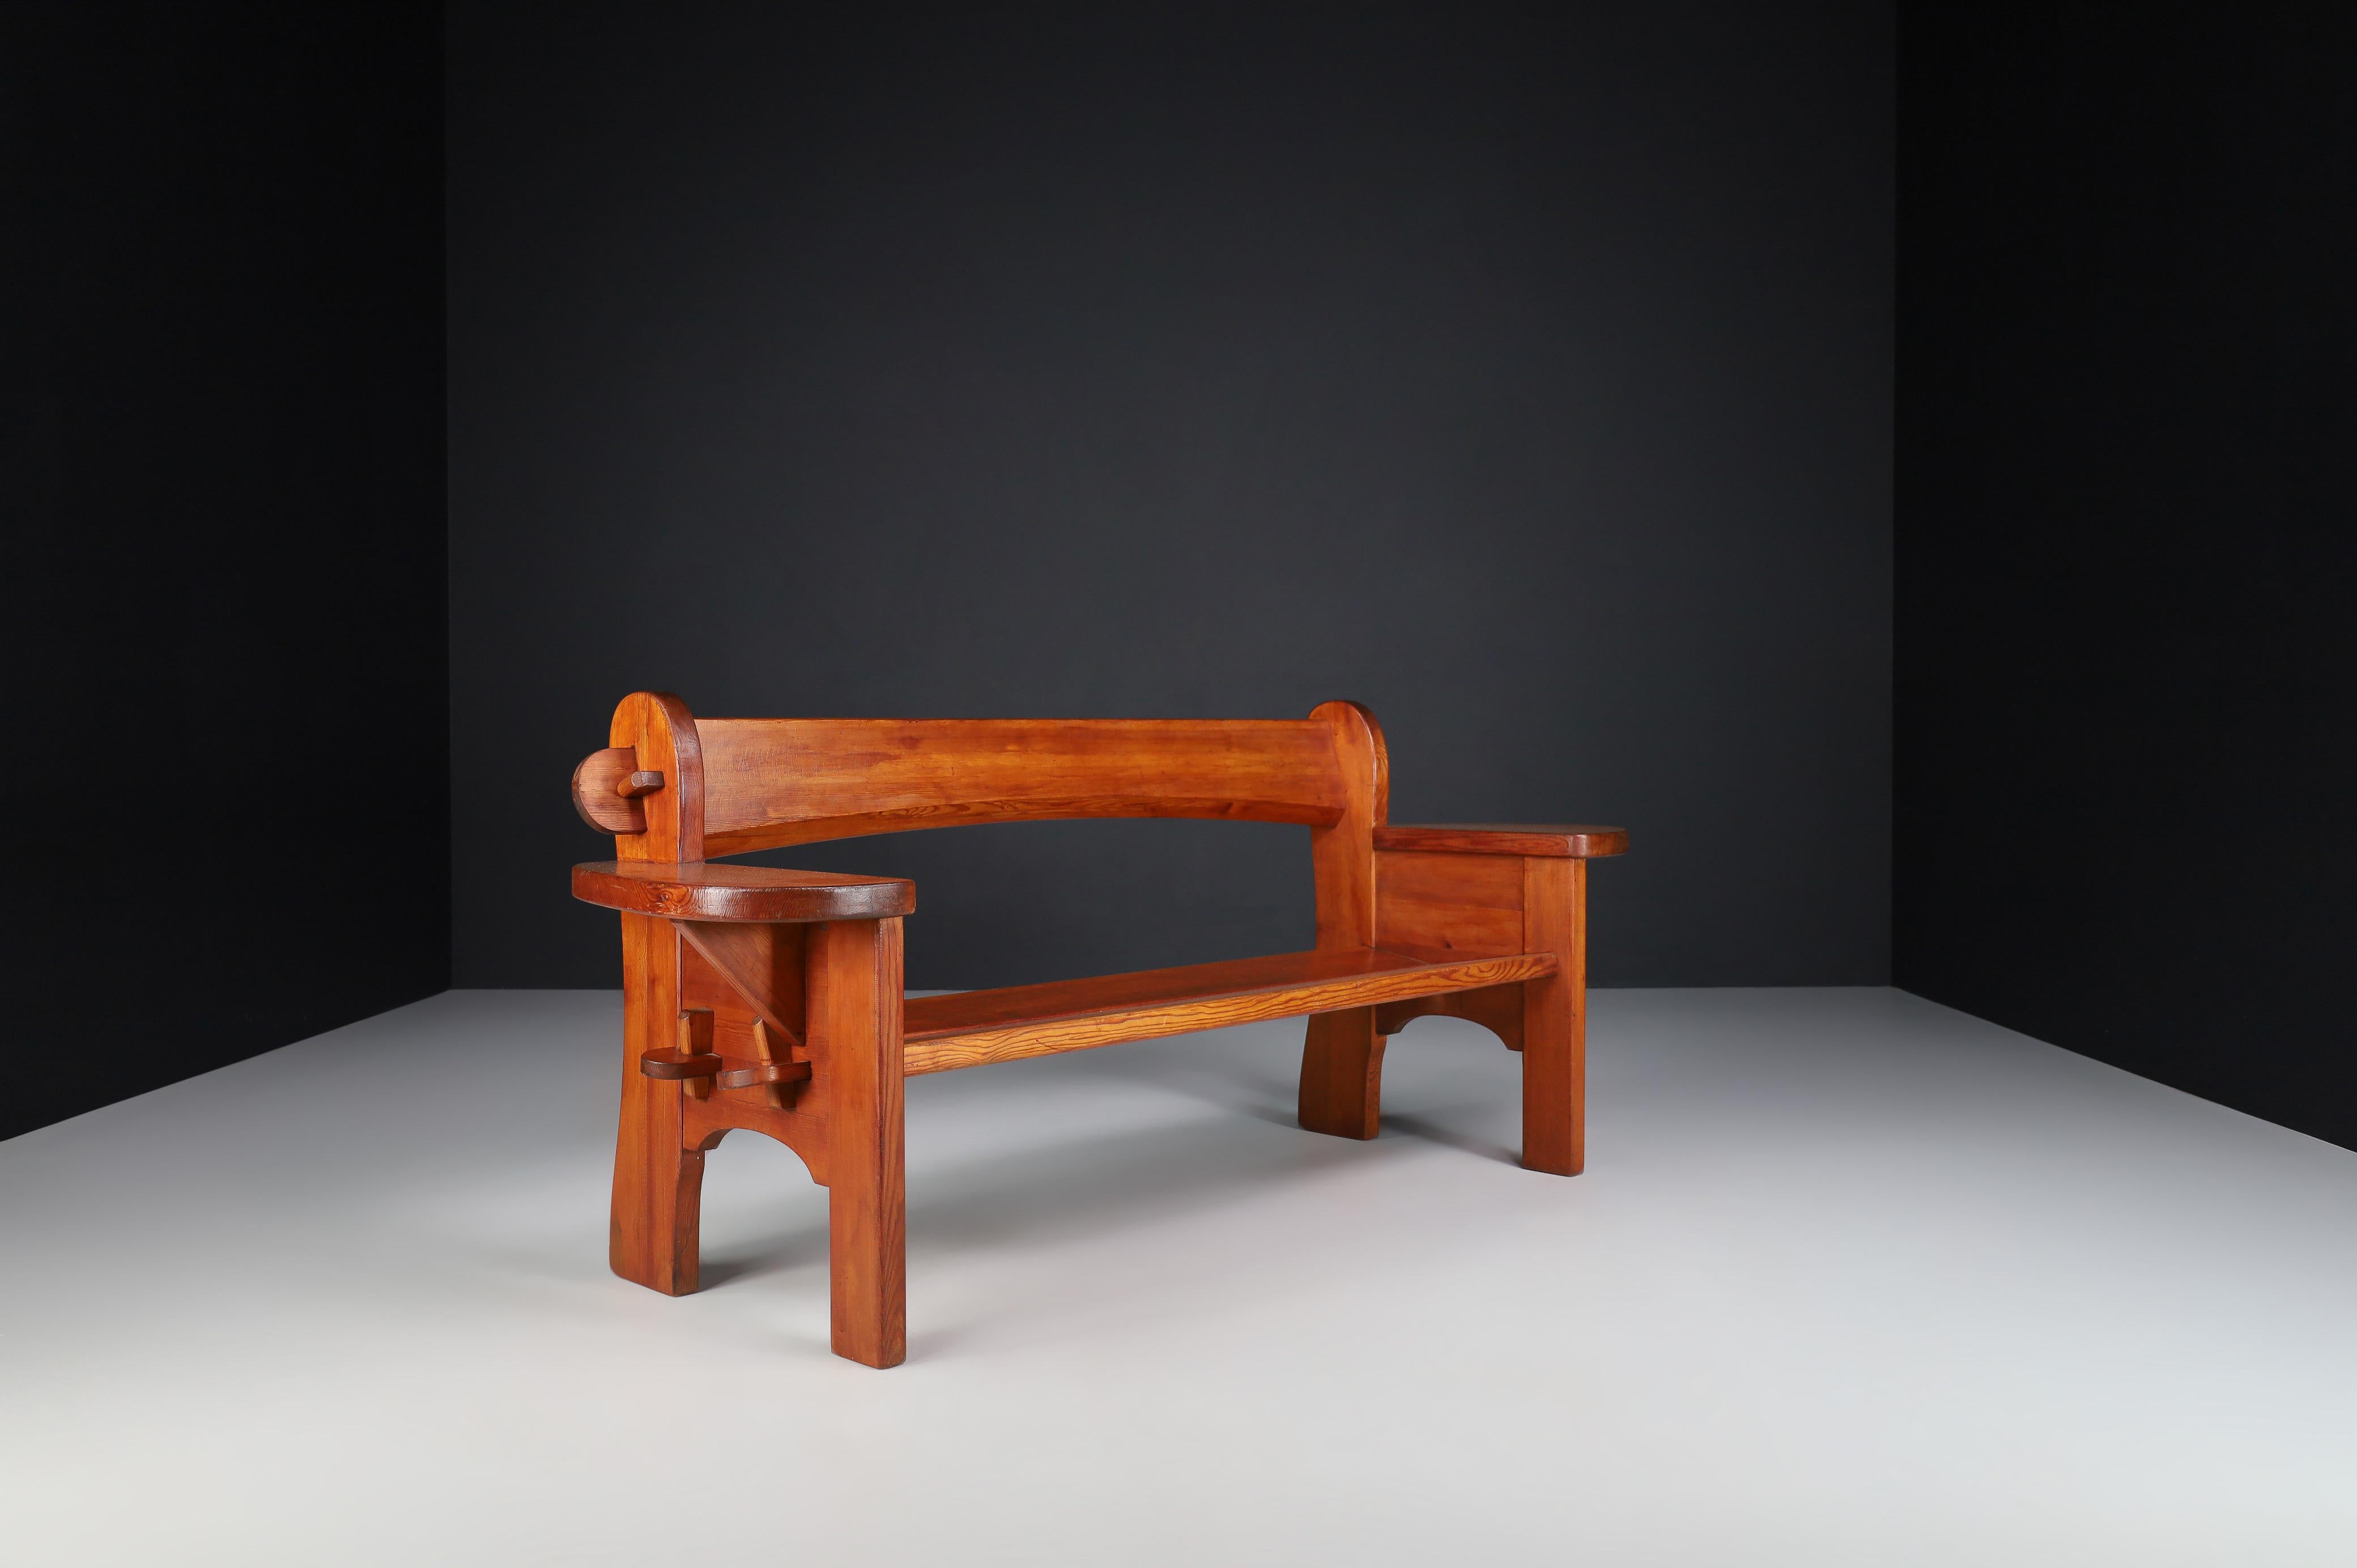 Pine Sofa Bench by David Rosén Model Berga, Nordiska Kompaniet, Sweden 1940s In Good Condition For Sale In Almelo, NL